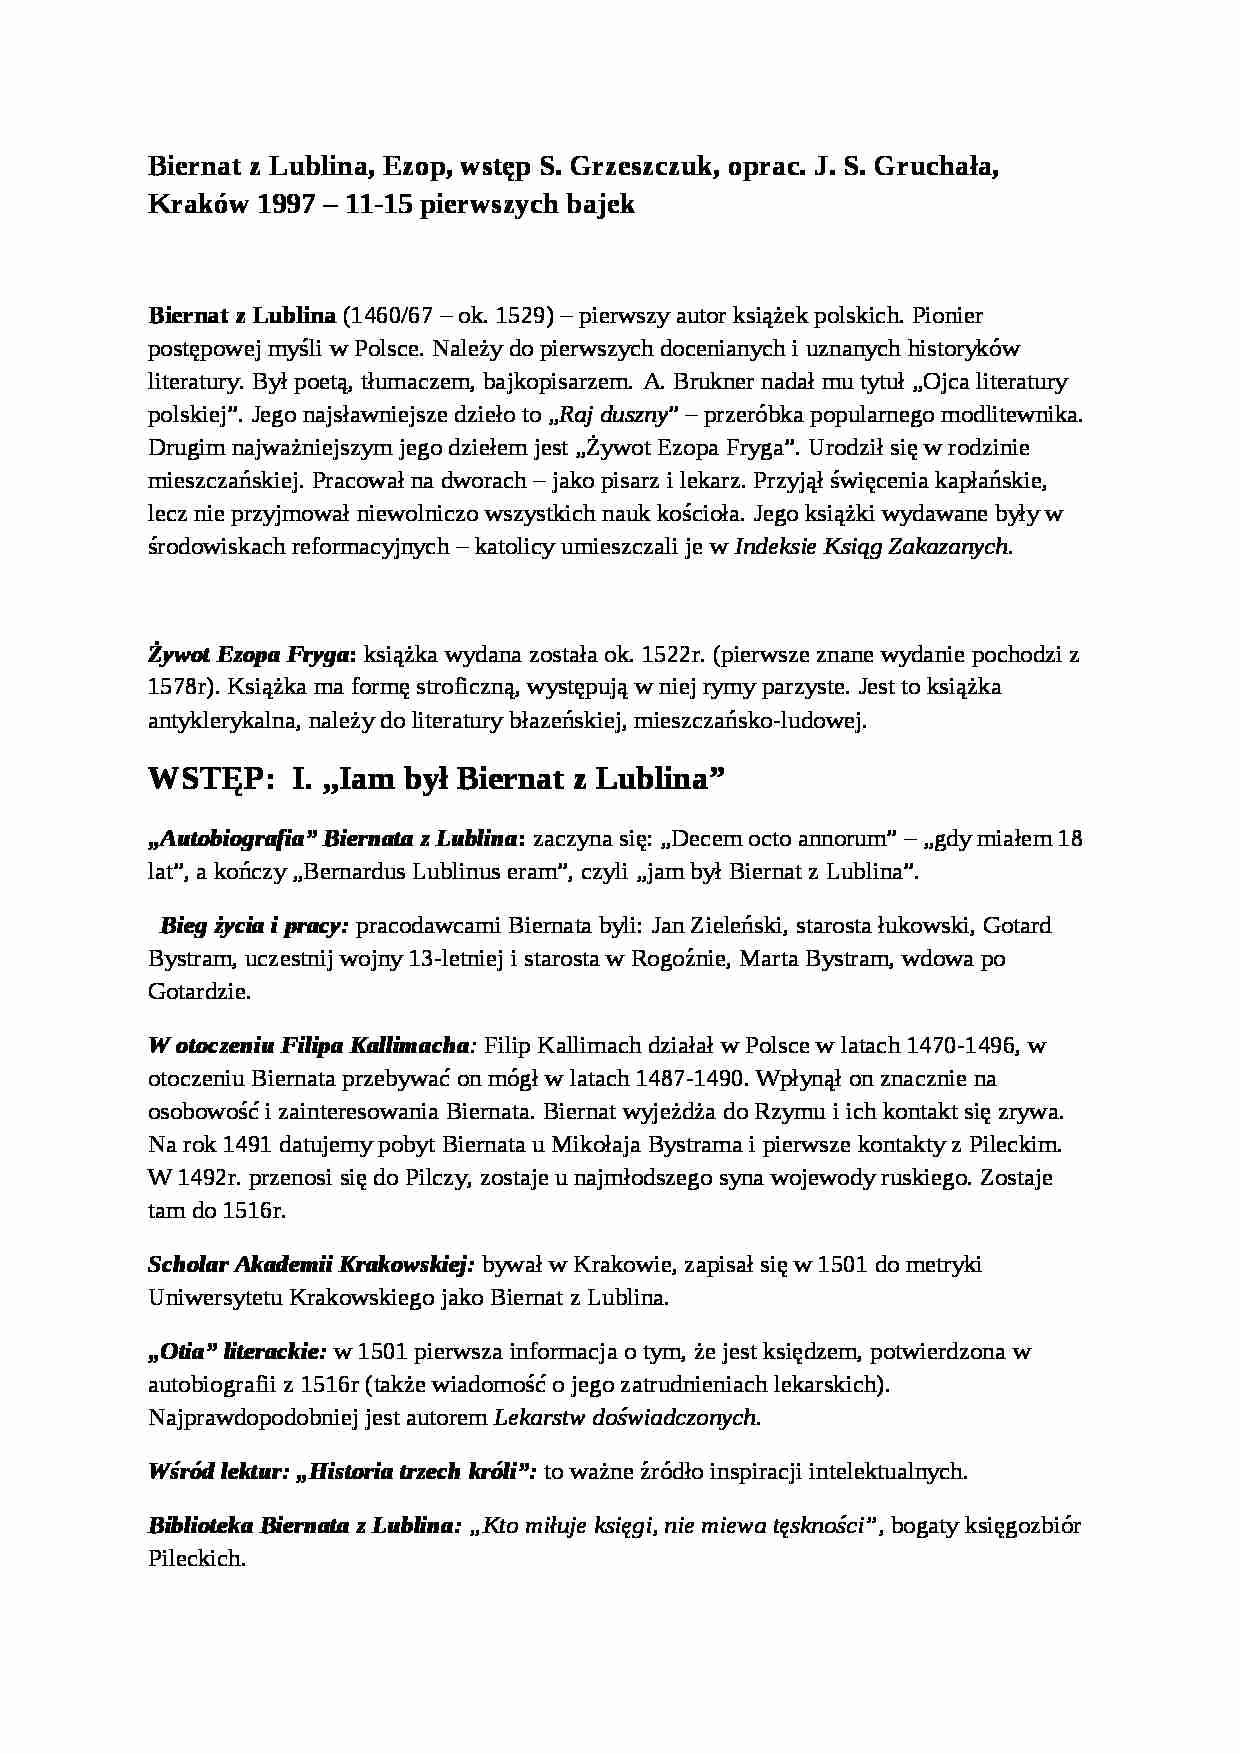 Biernat z Lublina, Ezop - 11-15 pierwszych bajek - strona 1